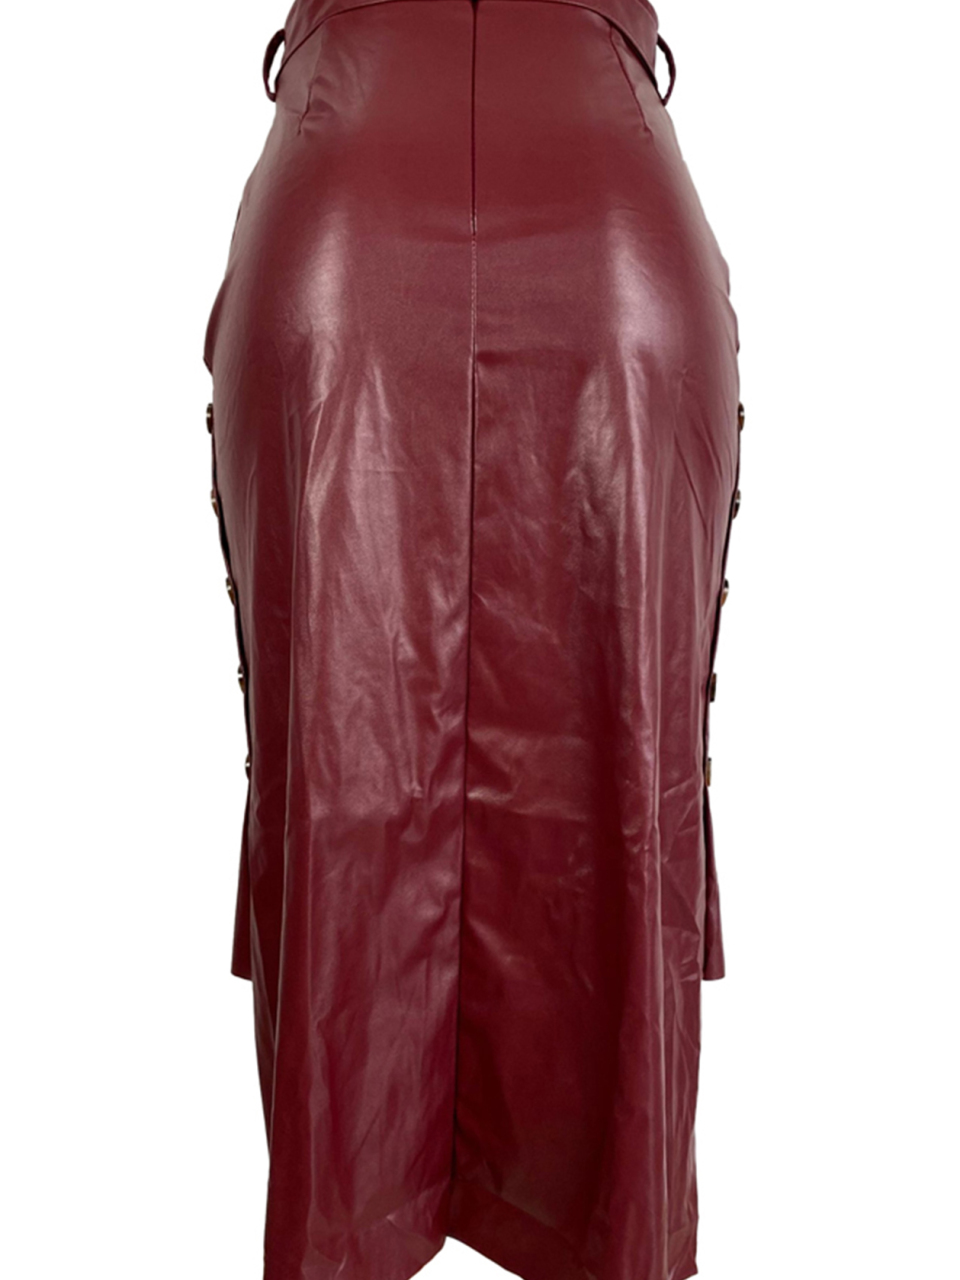 Ladies Casual Fashion Slit Mid Length Slim Skirt